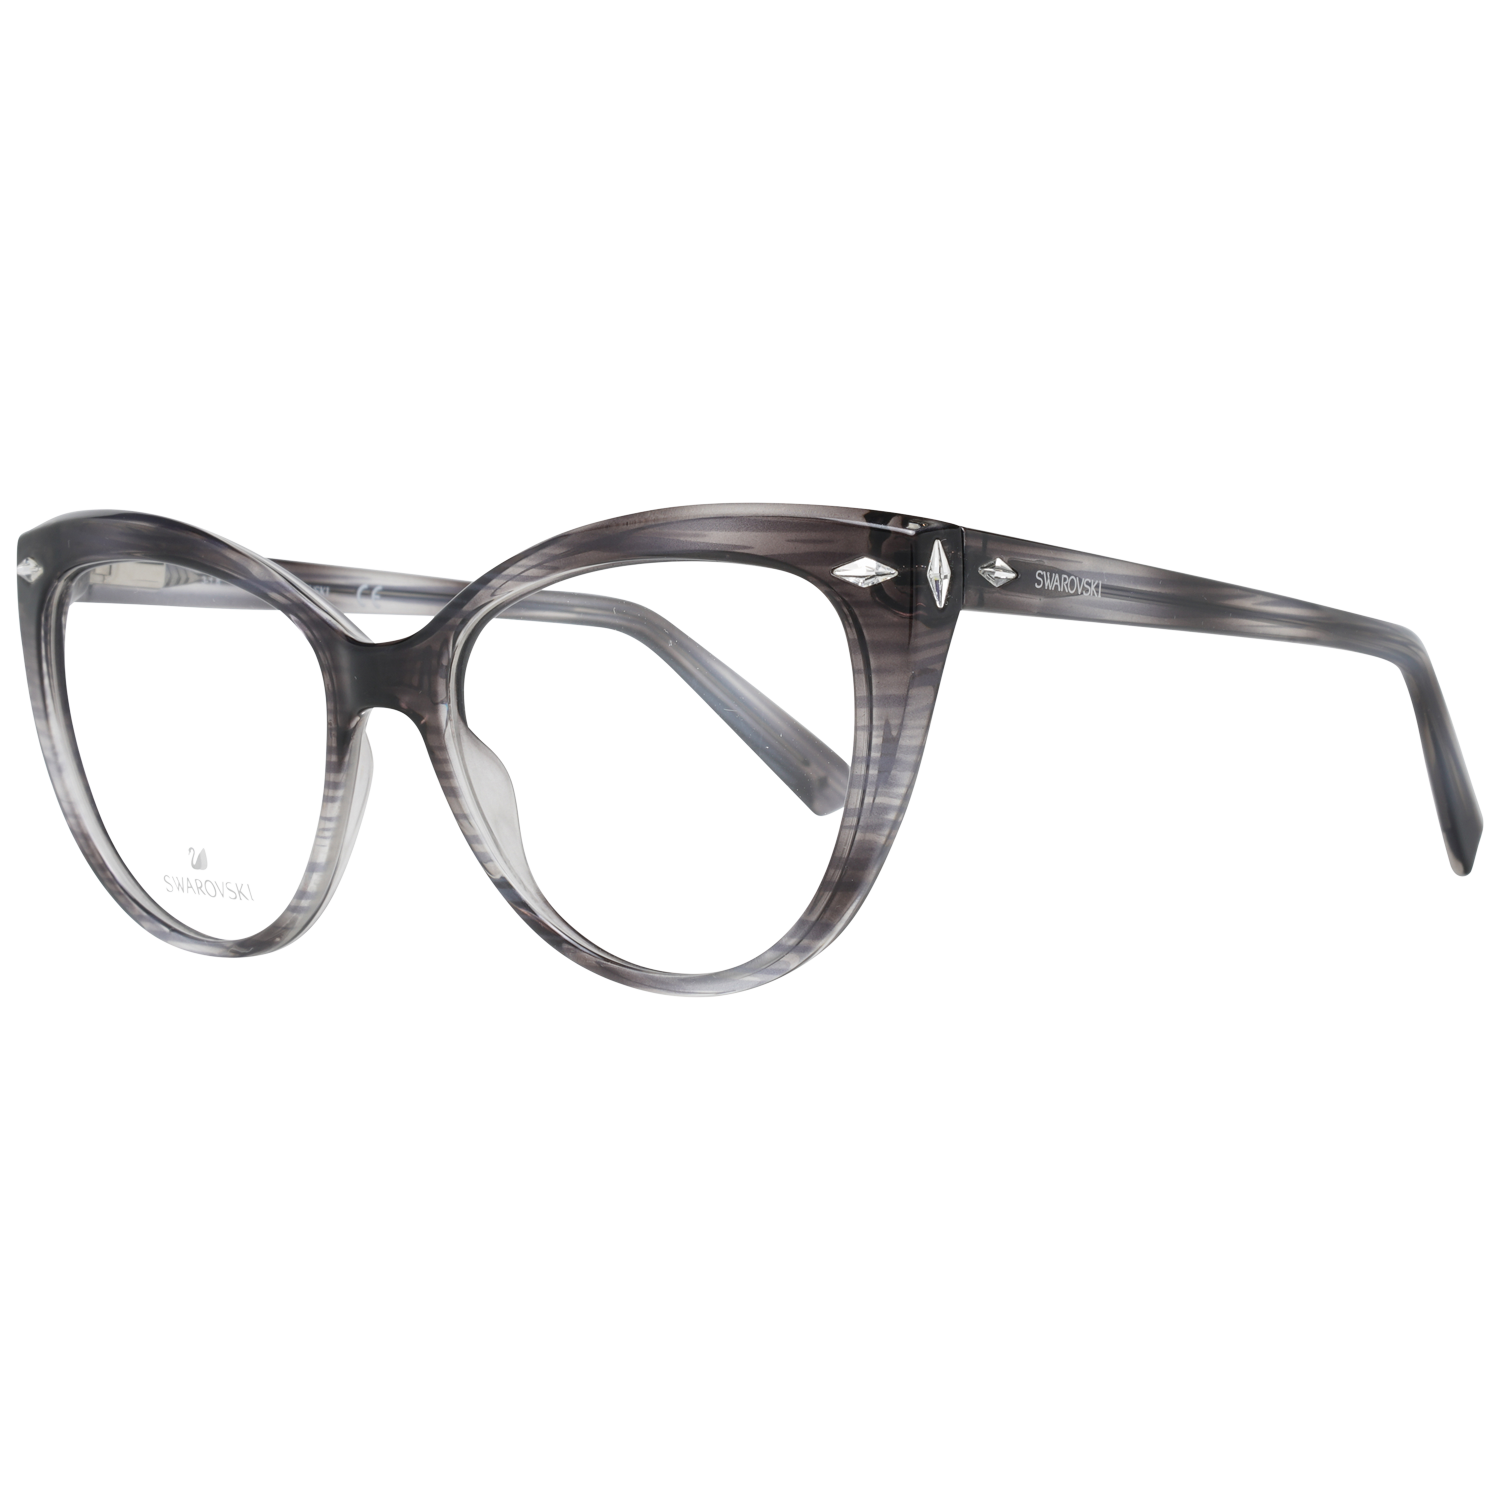 Swarovski Frames Swarovski Women Glasses Optical Frame SK5270 020 53 Eyeglasses Eyewear UK USA Australia 